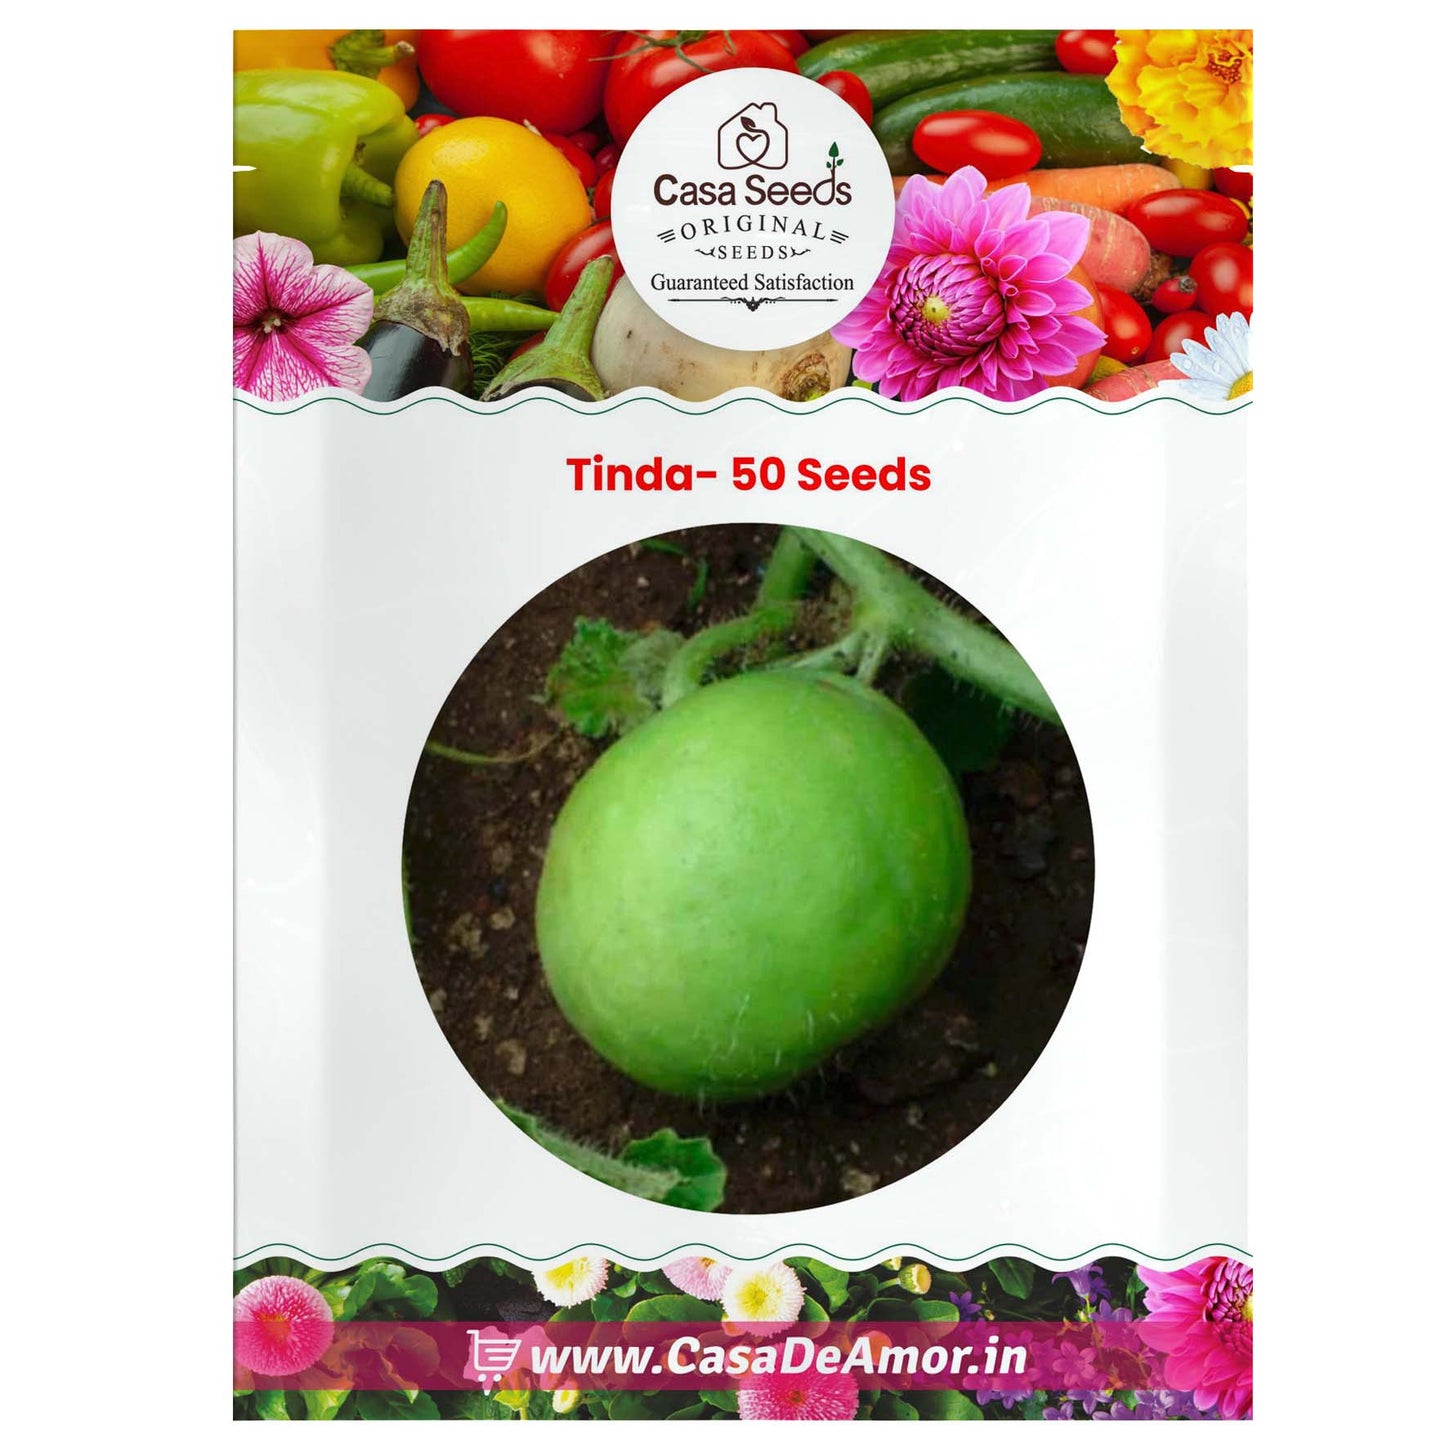 Tinda- 50 Seeds